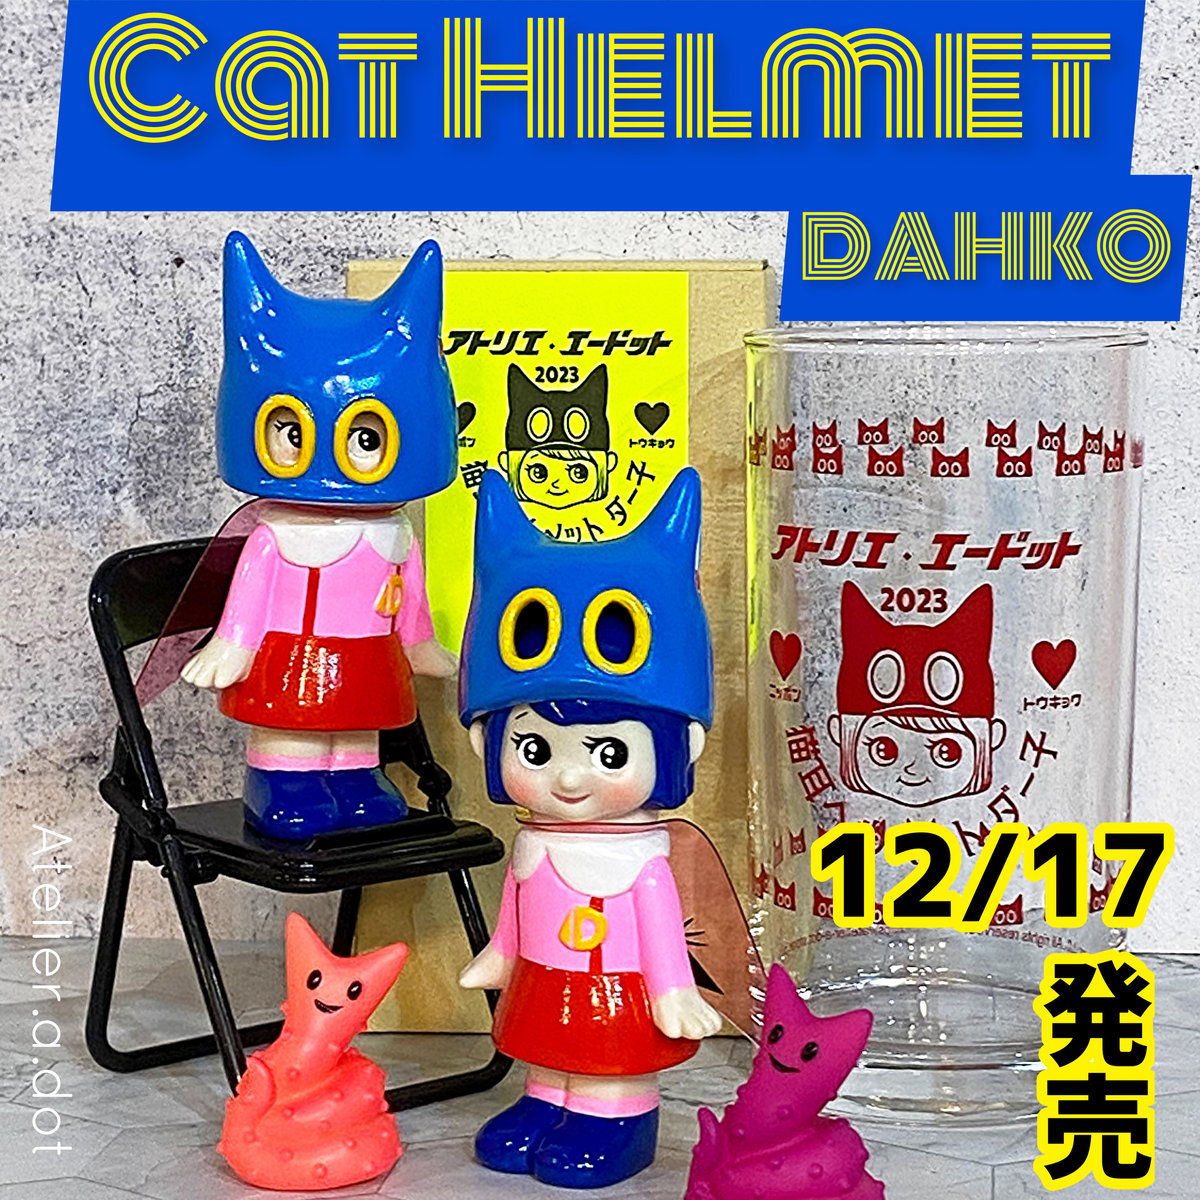 12/17限定30個 猫耳ヘルメット大 ダー子 Cat Helmet DAHKO 2期 #2(Helmet:L)30pcs EX with Glass  Cup